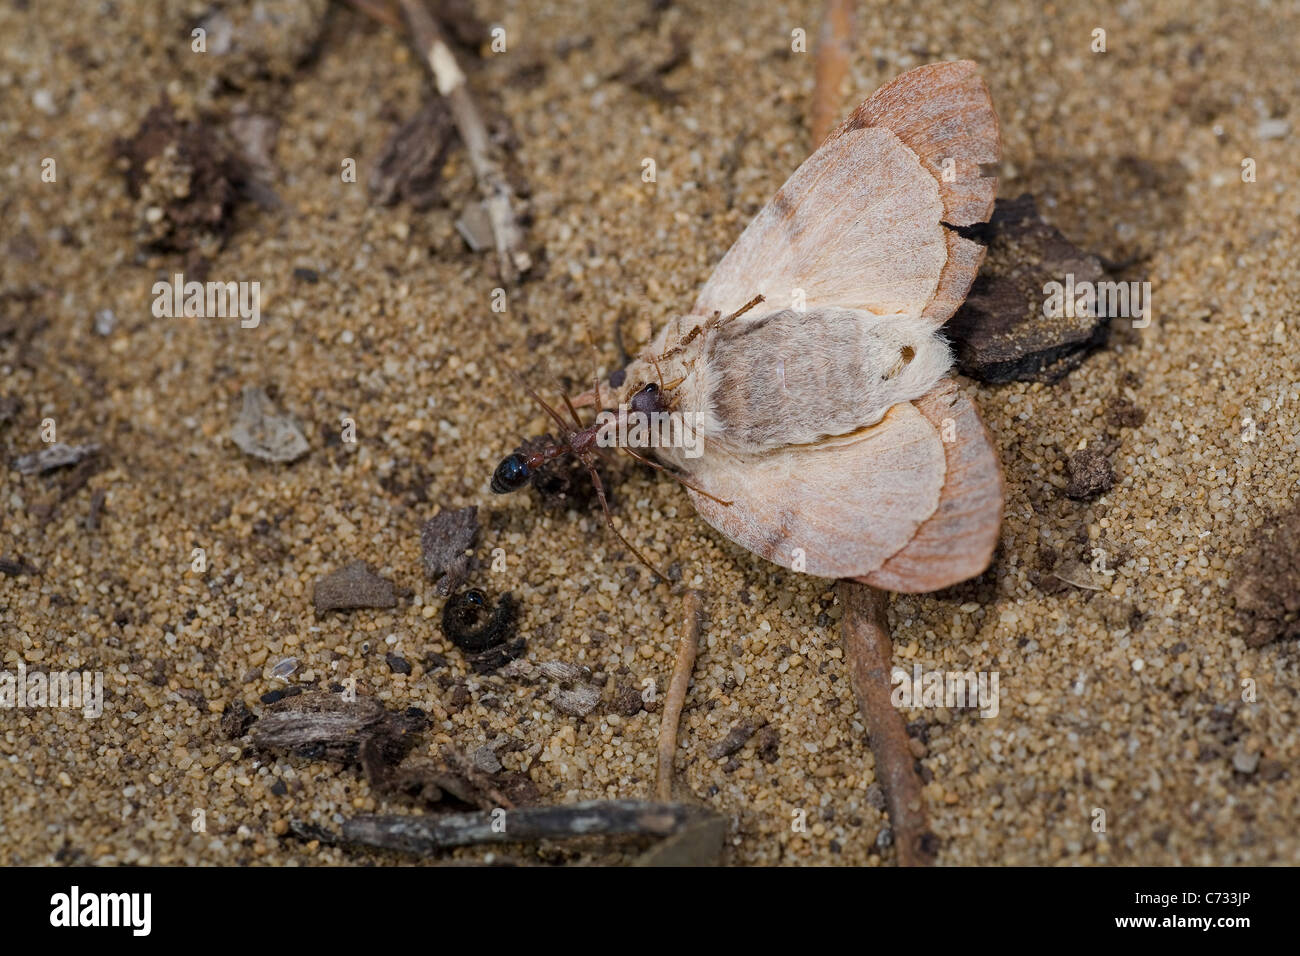 Bull australiano Ant intenta arrastrar una polilla que ha matado volver al nido. Foto de stock